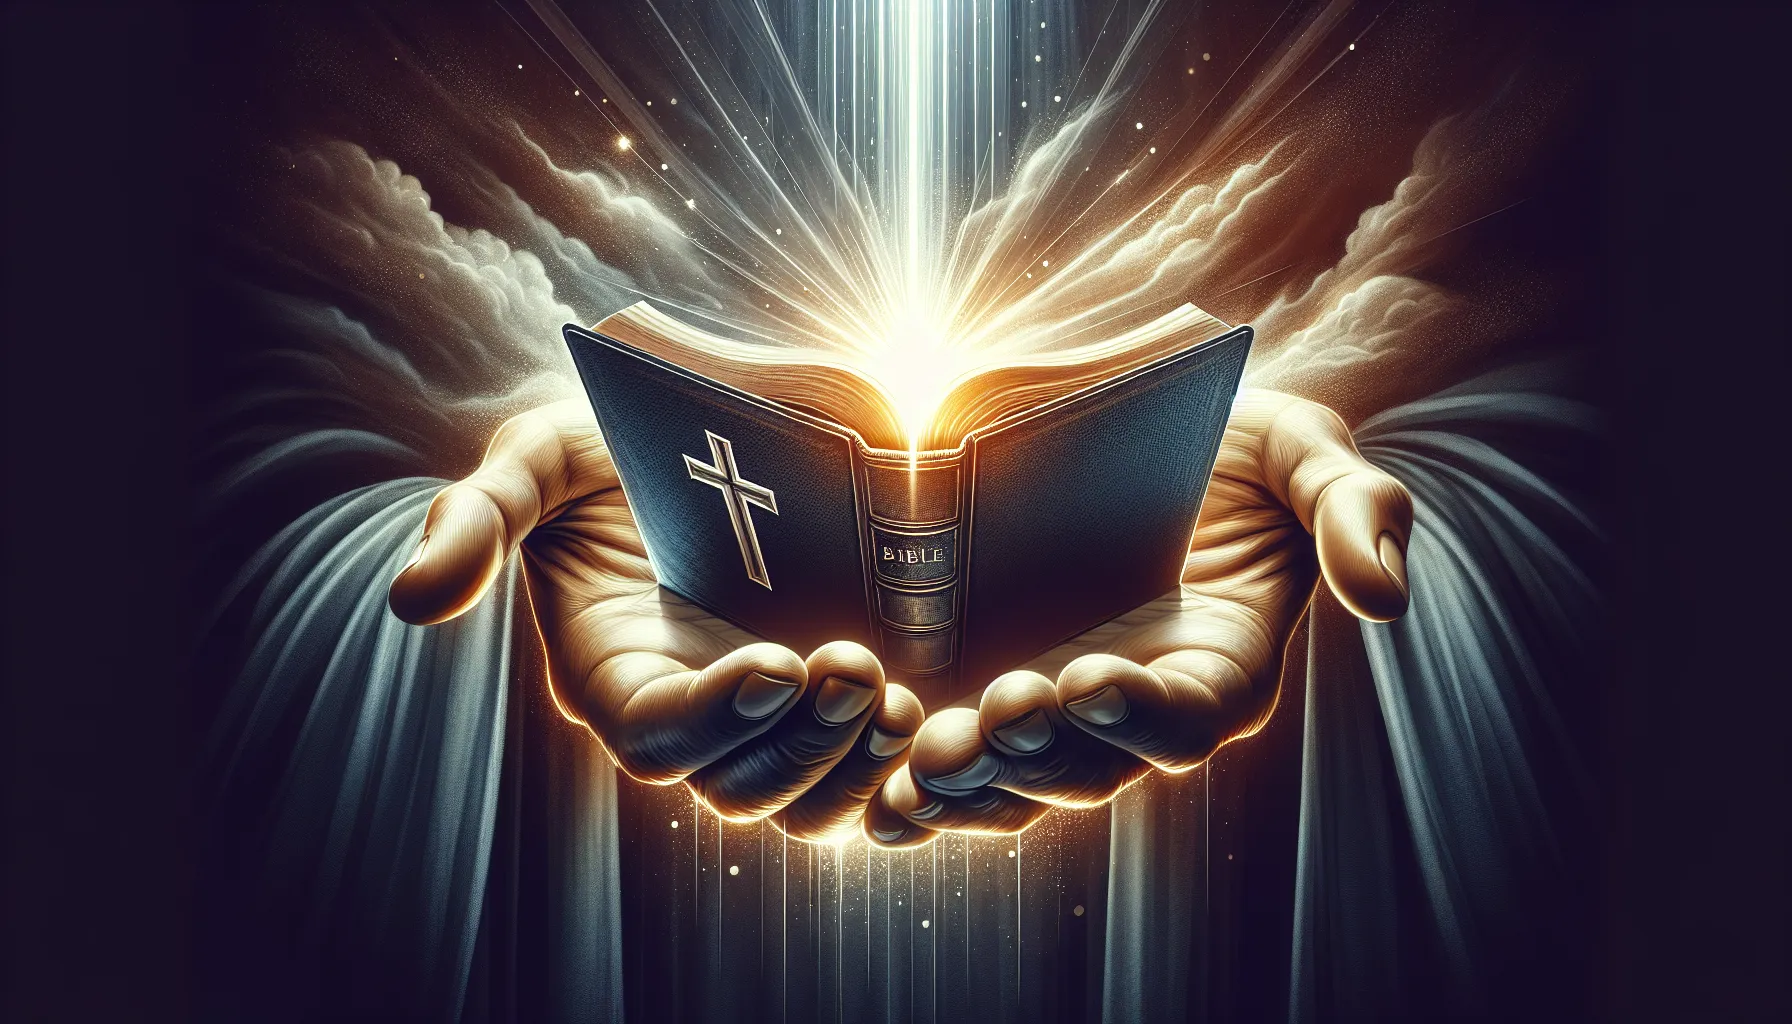 Una imagen de una mano sosteniendo una biblia abierta, con un rayo de luz brillante saliendo de ella, simbolizando la fe y su importancia para los creyentes.